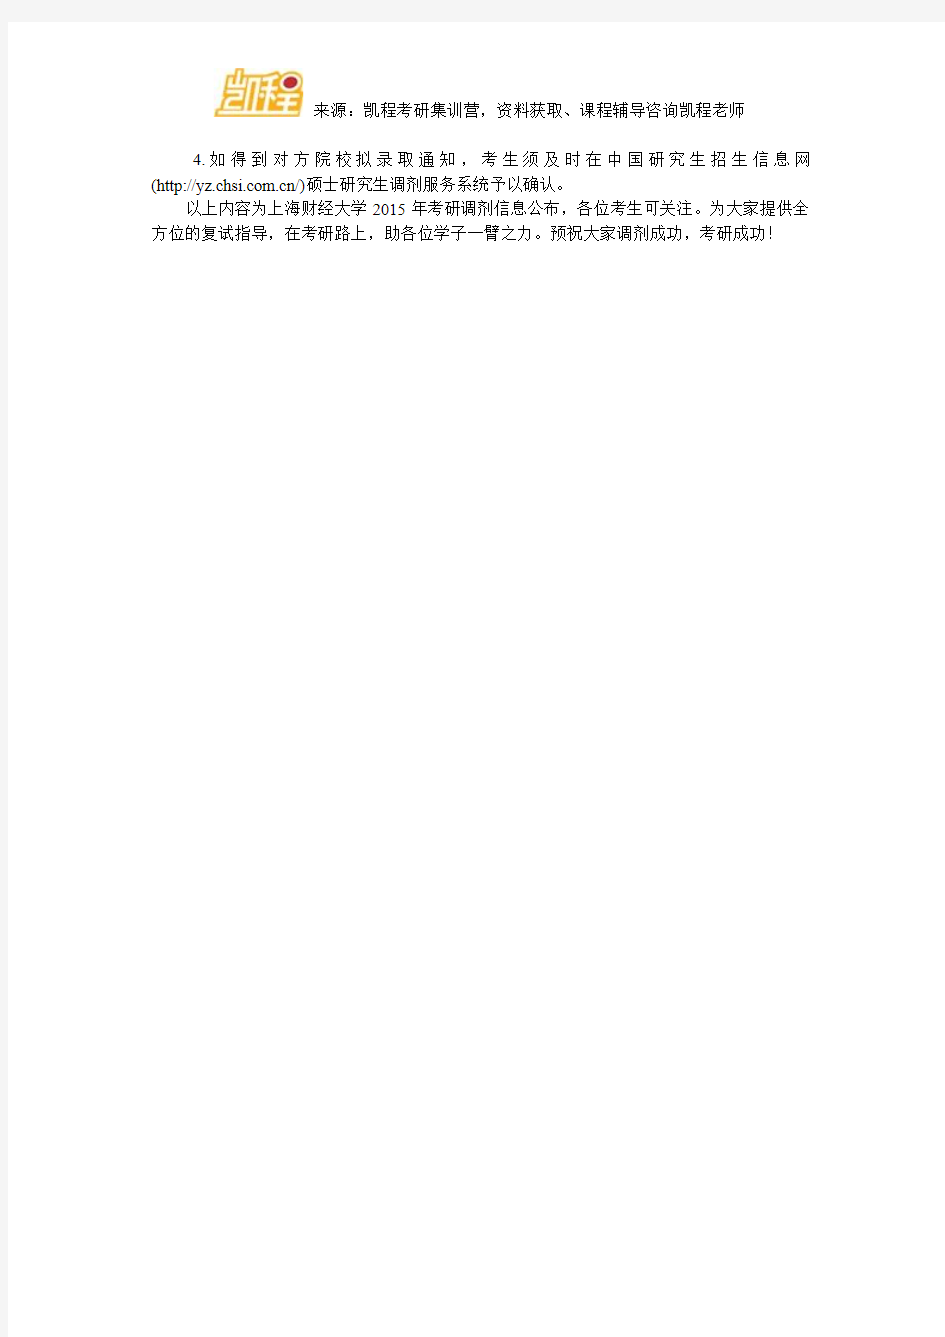 上海财经大学考研调剂信息公布